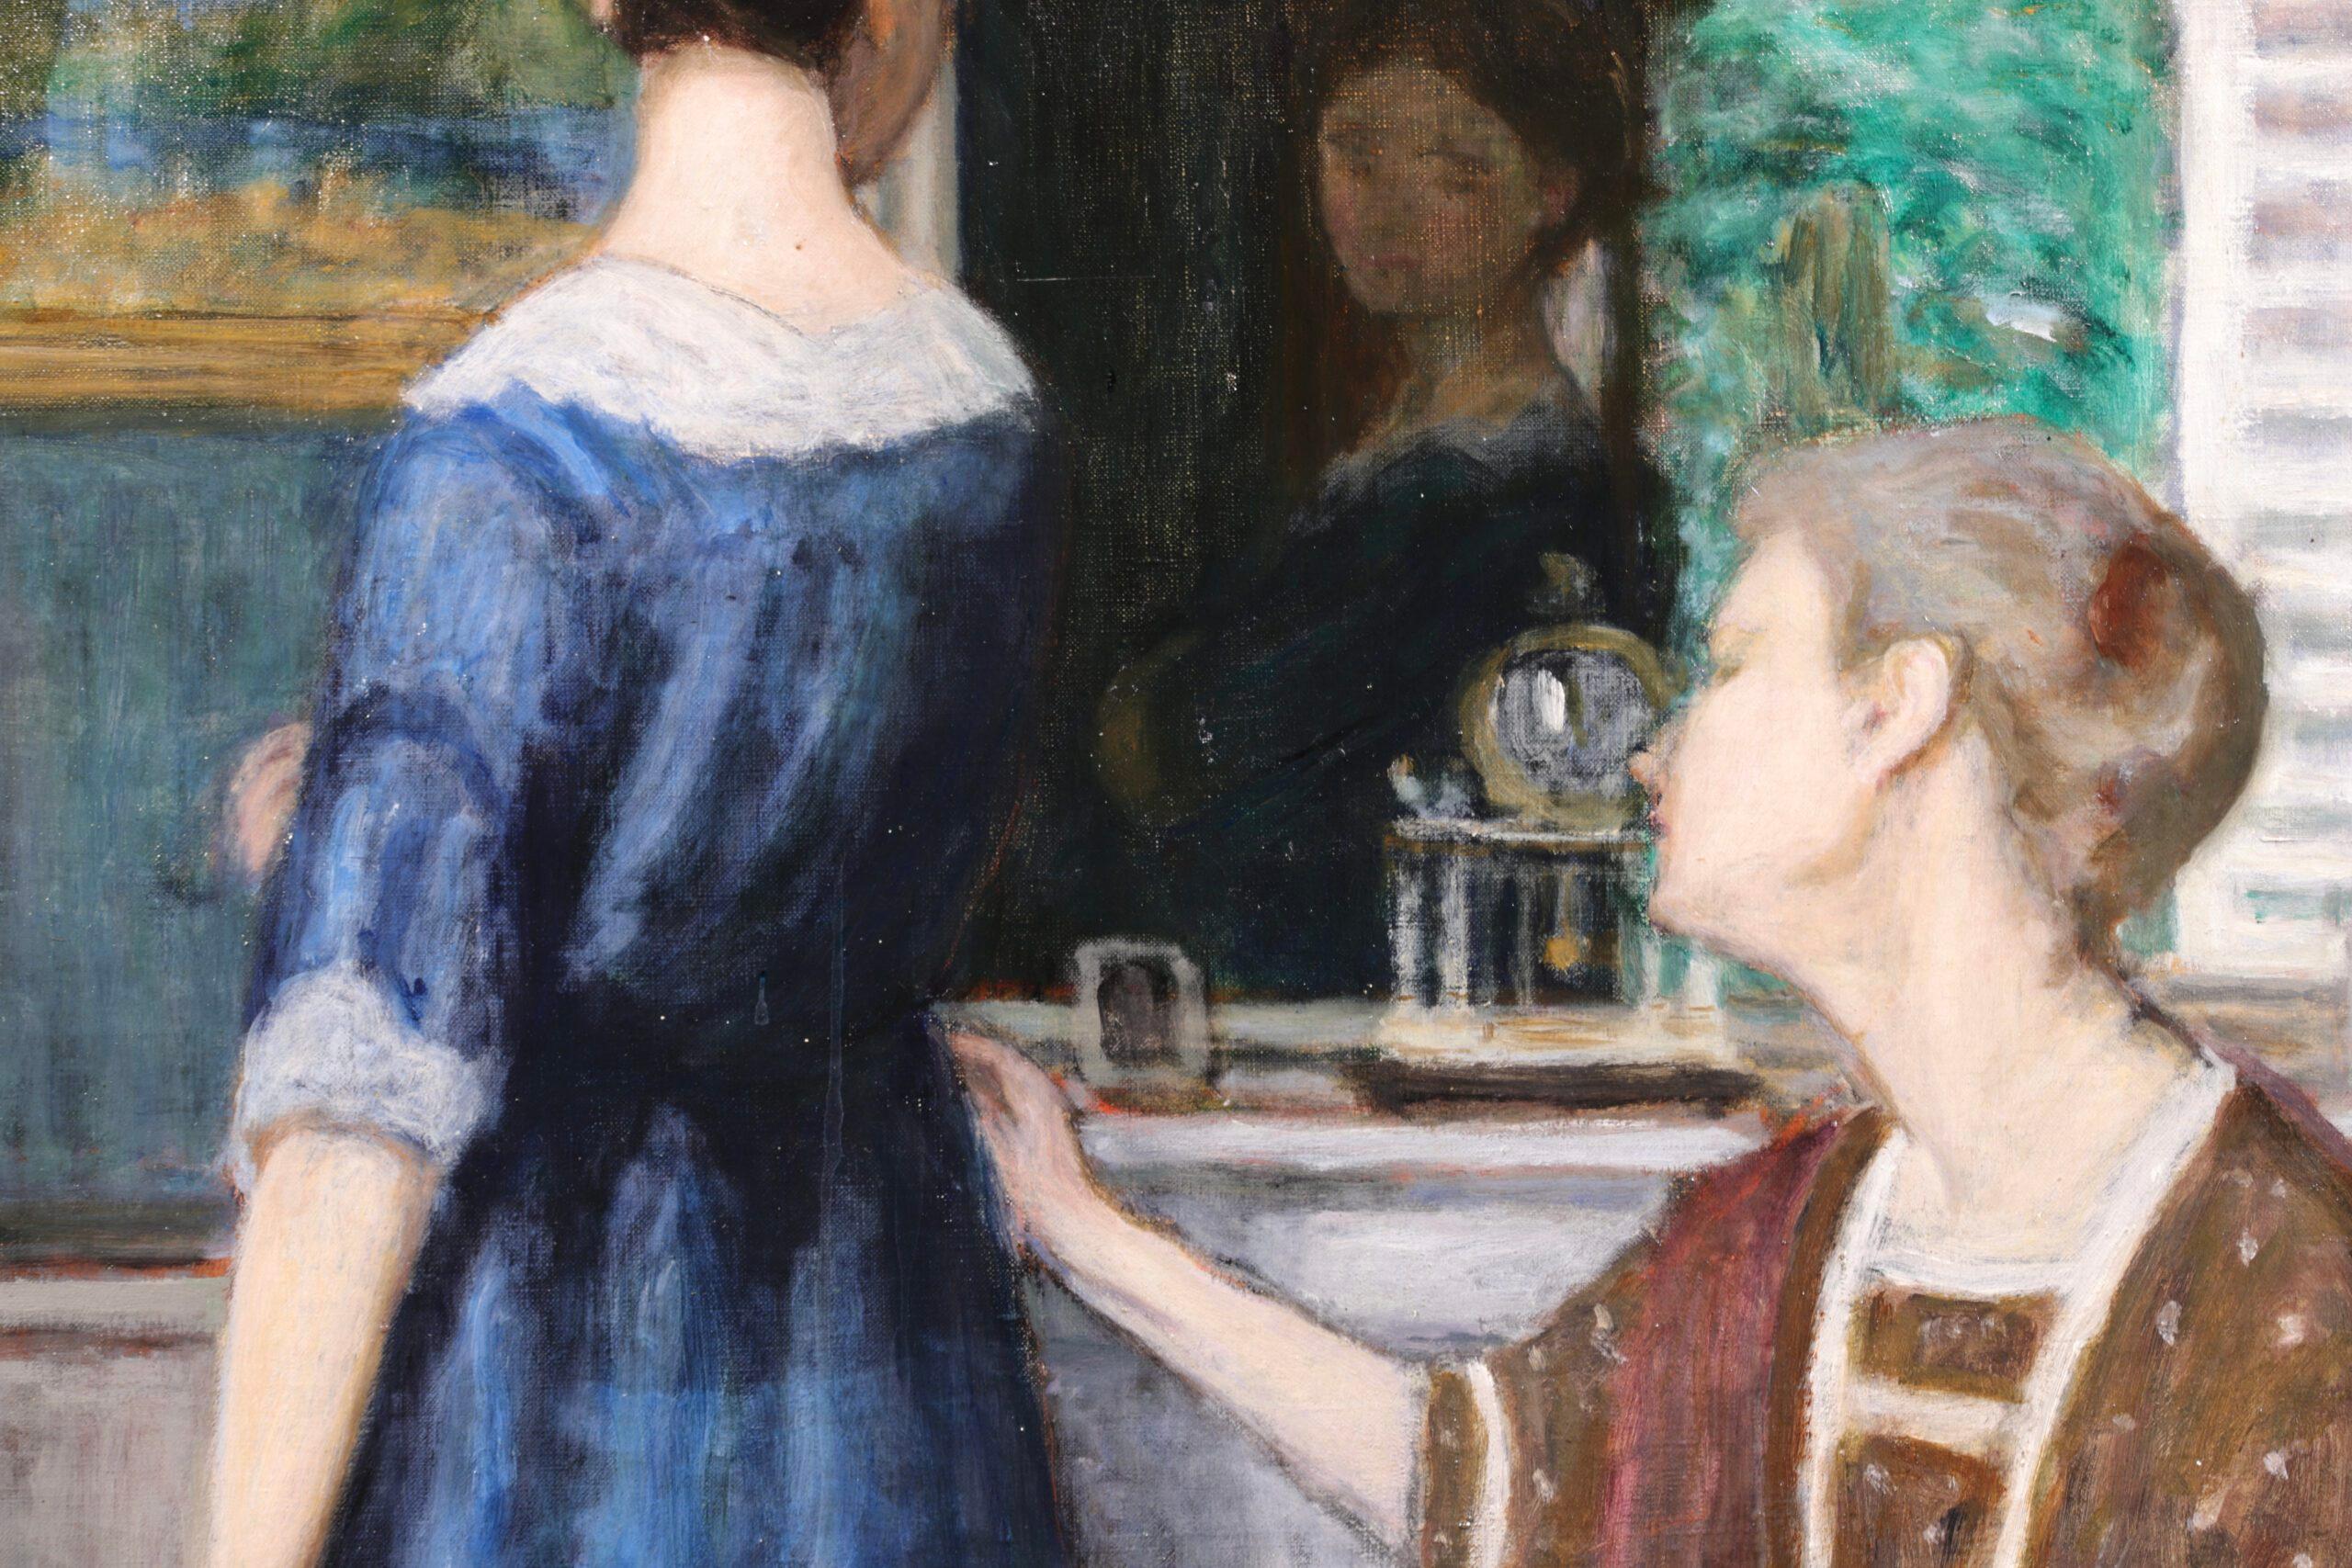 Signiertes figuratives Öl auf originaler Leinwand des französischen postimpressionistischen Malers Eugene Antoine Durenne. Das Werk zeigt eine junge Frau in einem blauen Kleid, die in einen Spiegel schaut. Neben ihr sitzt eine Näherin, die die